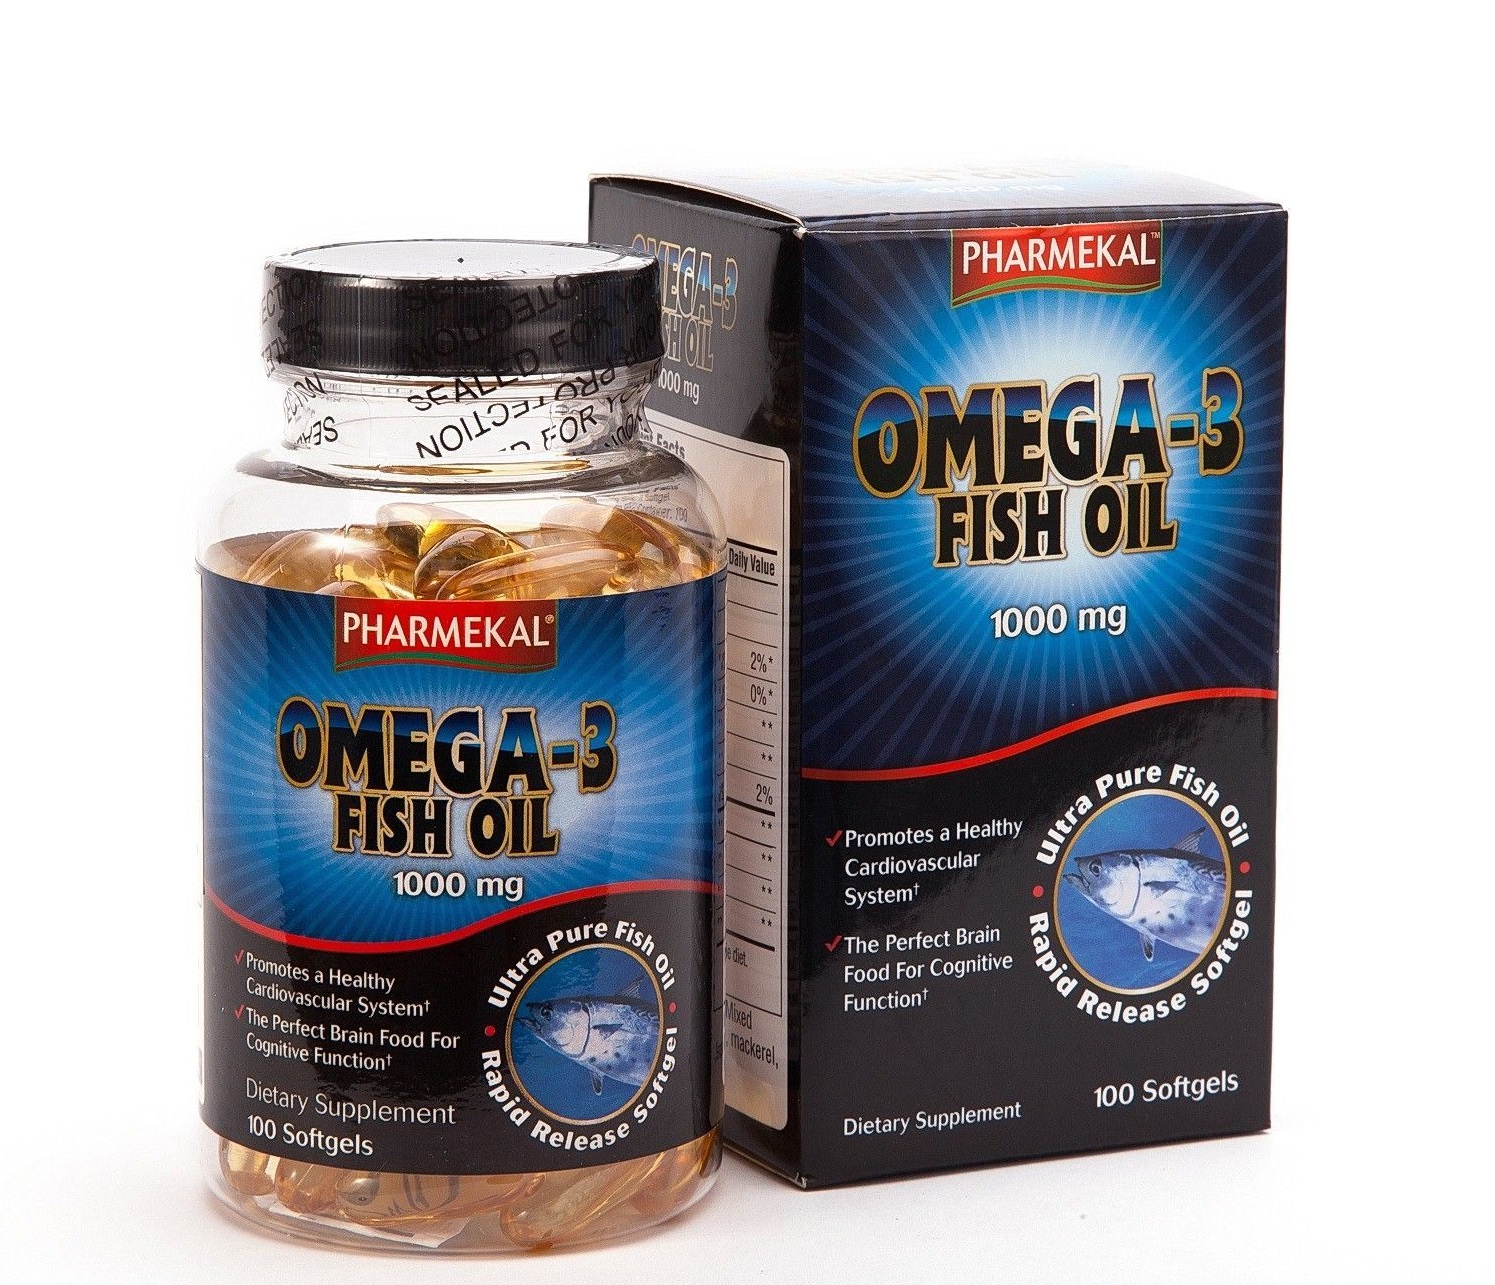 Dáº§u cÃ¡ Omega 3 Fish Oil 1000mg Pharmekal há»p 100 viÃªn